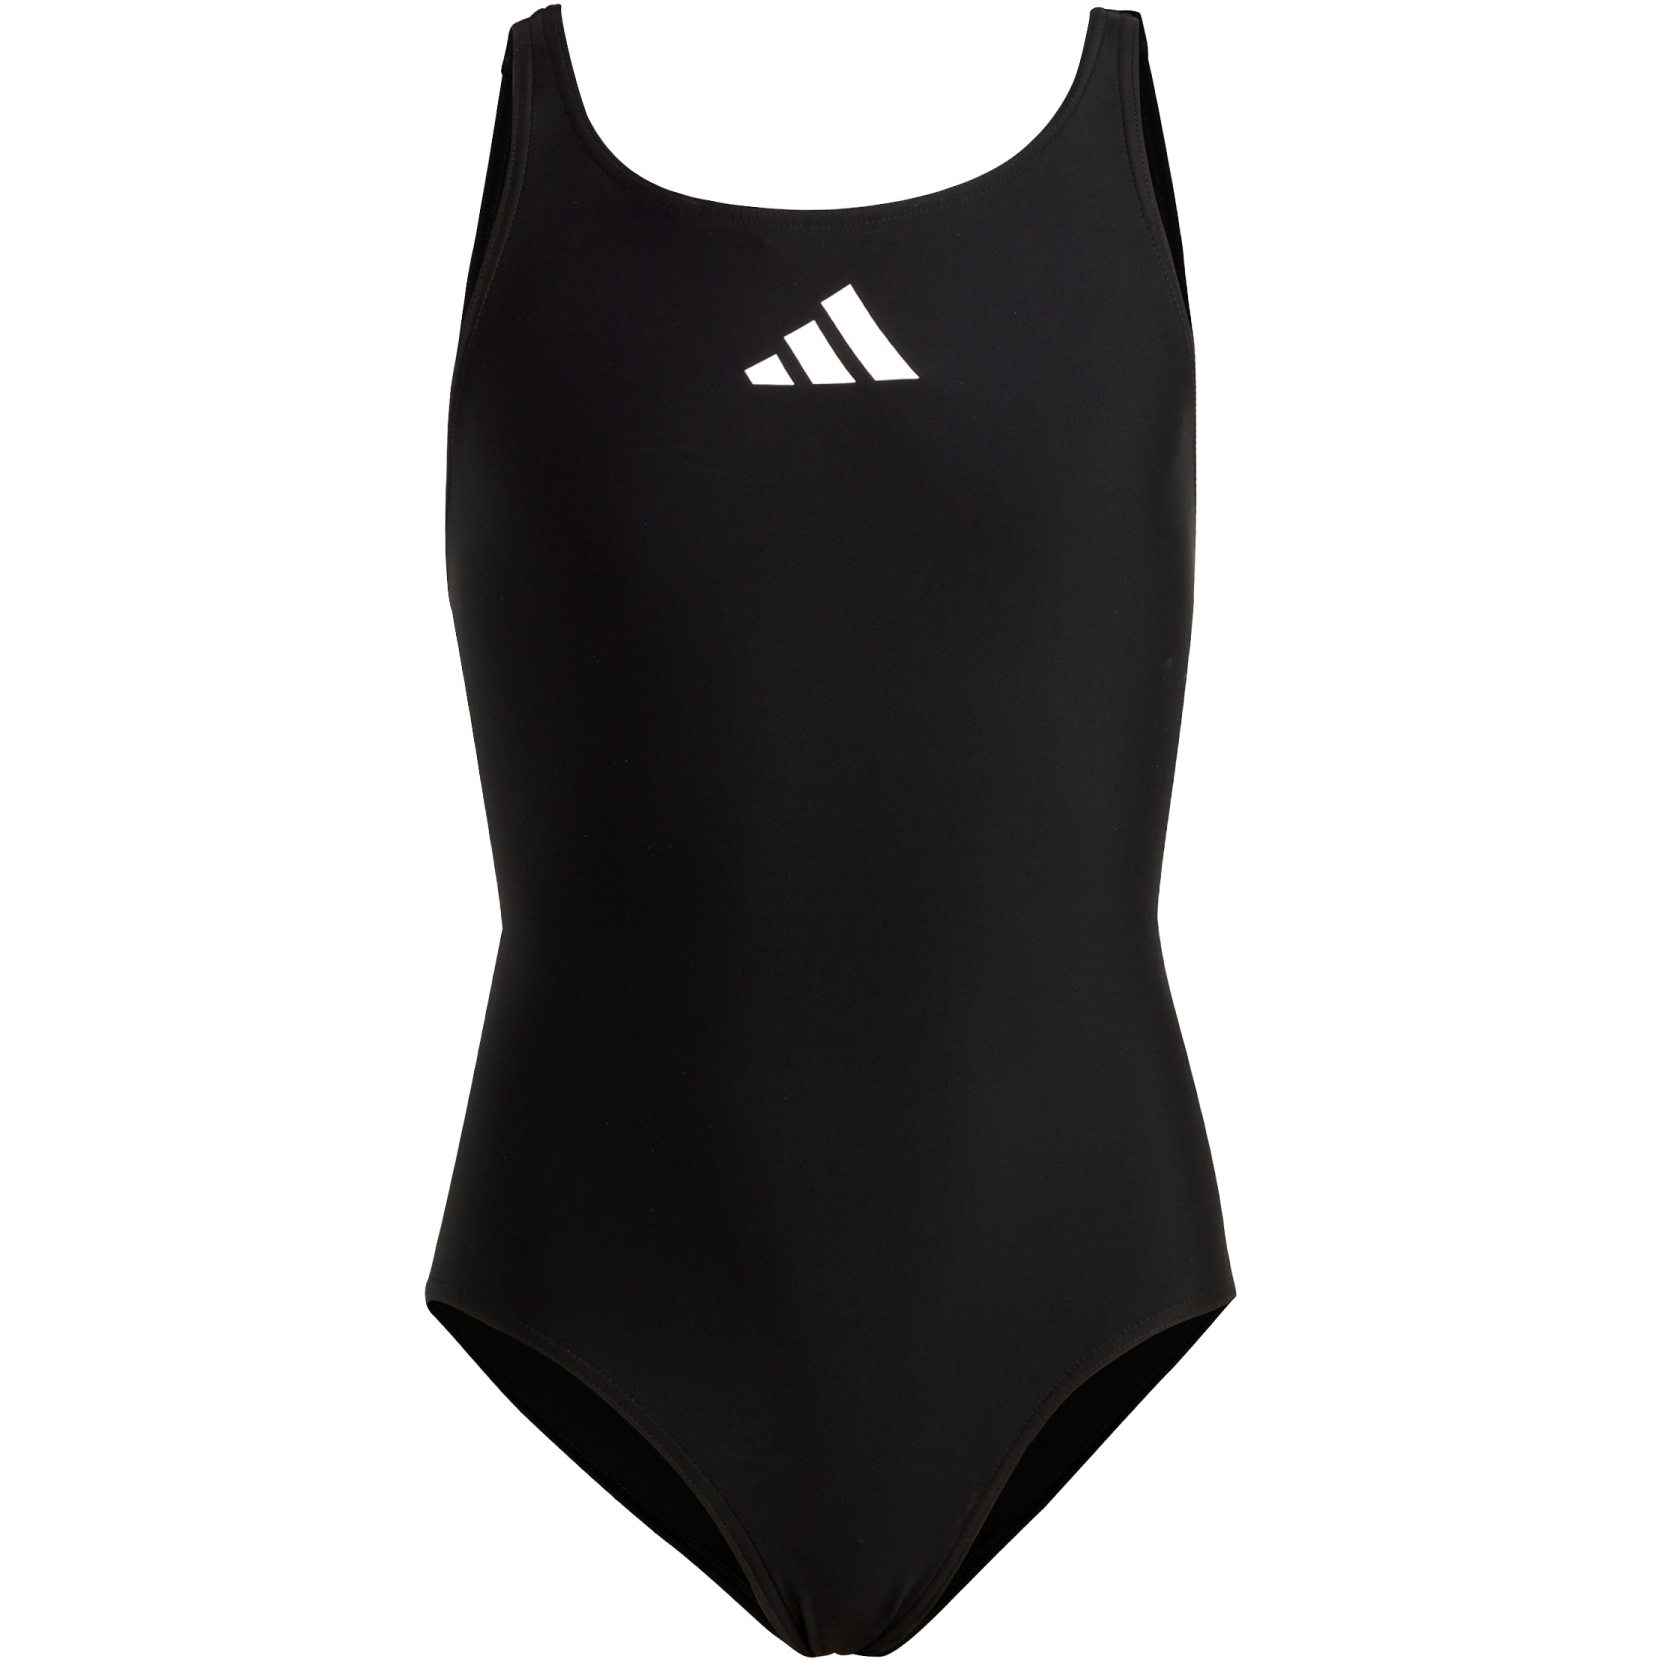 Produktbild von adidas Solid Small Logo Badeanzug Kinder - schwarz/weiß HR7477